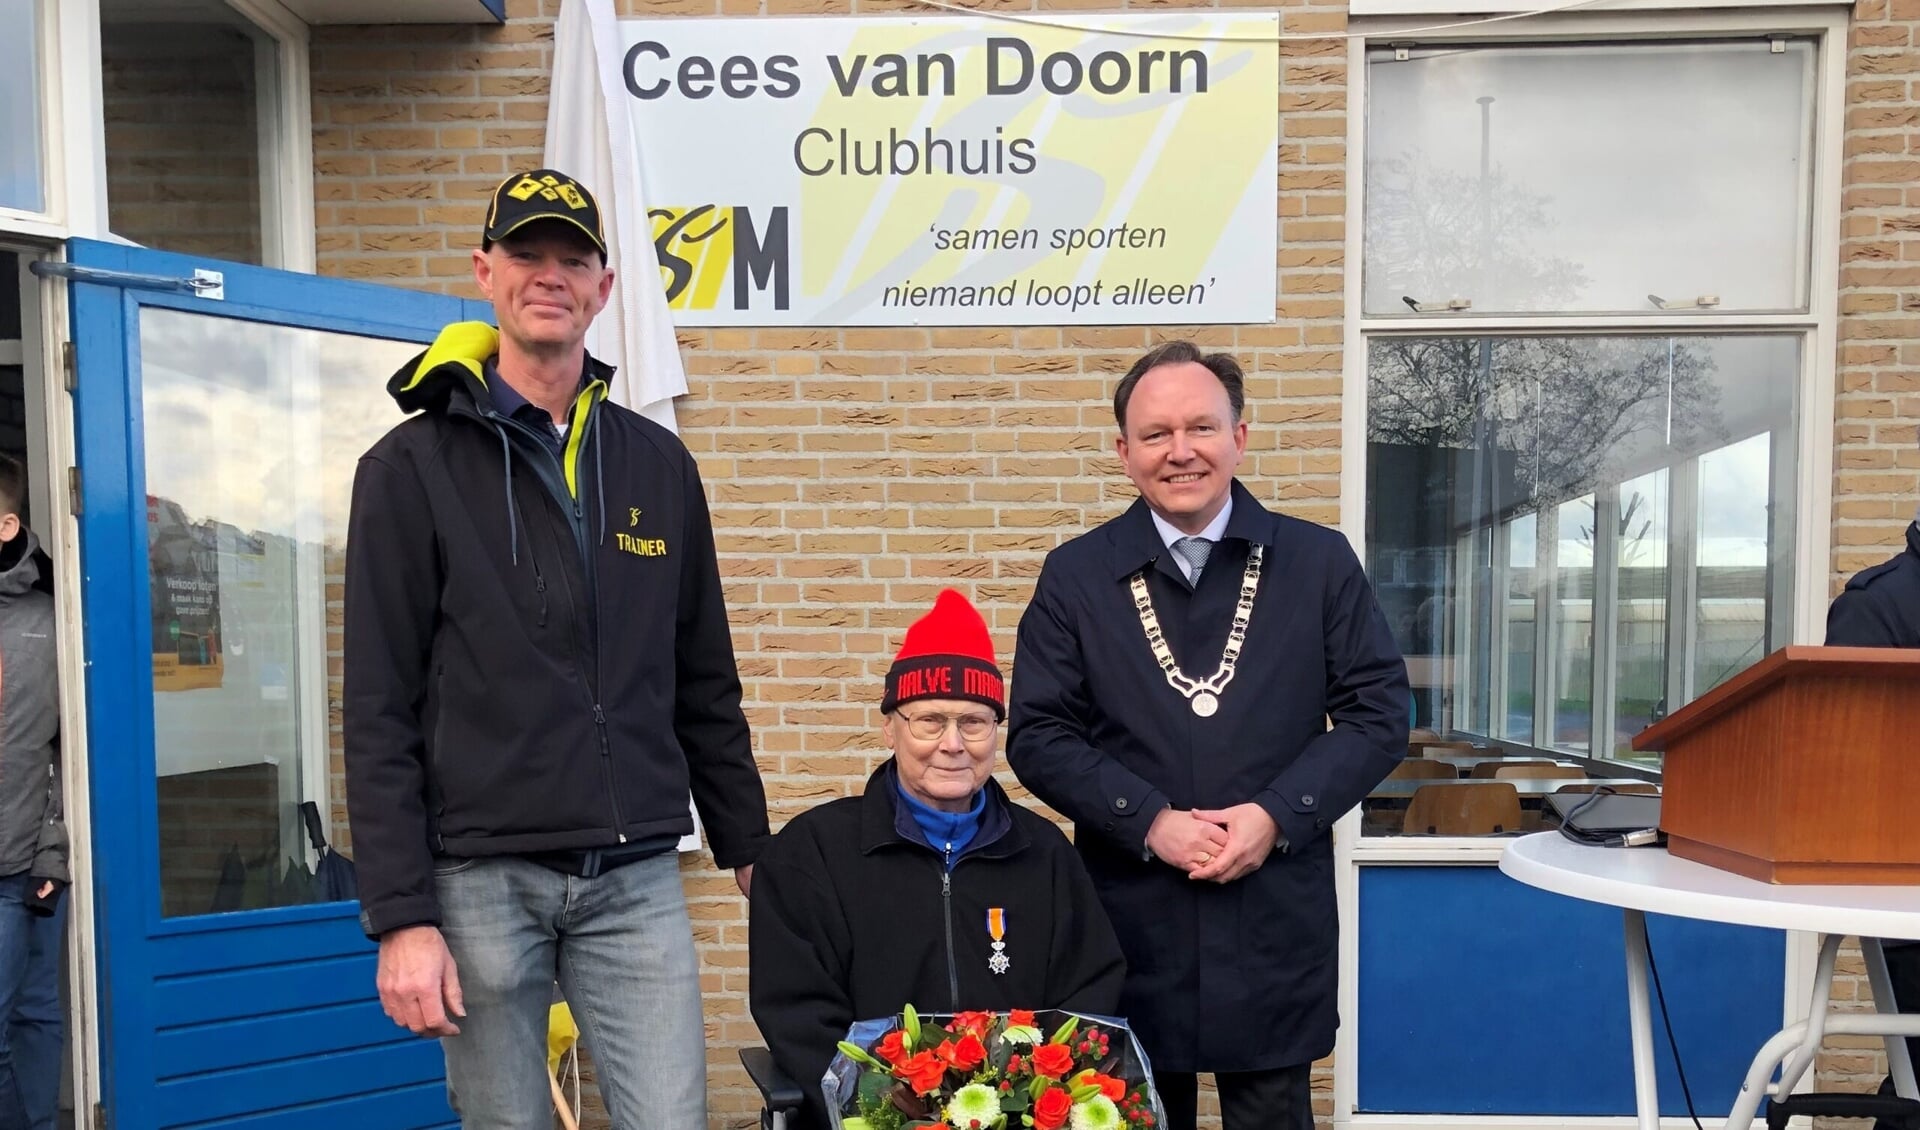  Voorzitter René Stokman van OSM’75, Cees van Doorn en burgemeester Ap Reinders  